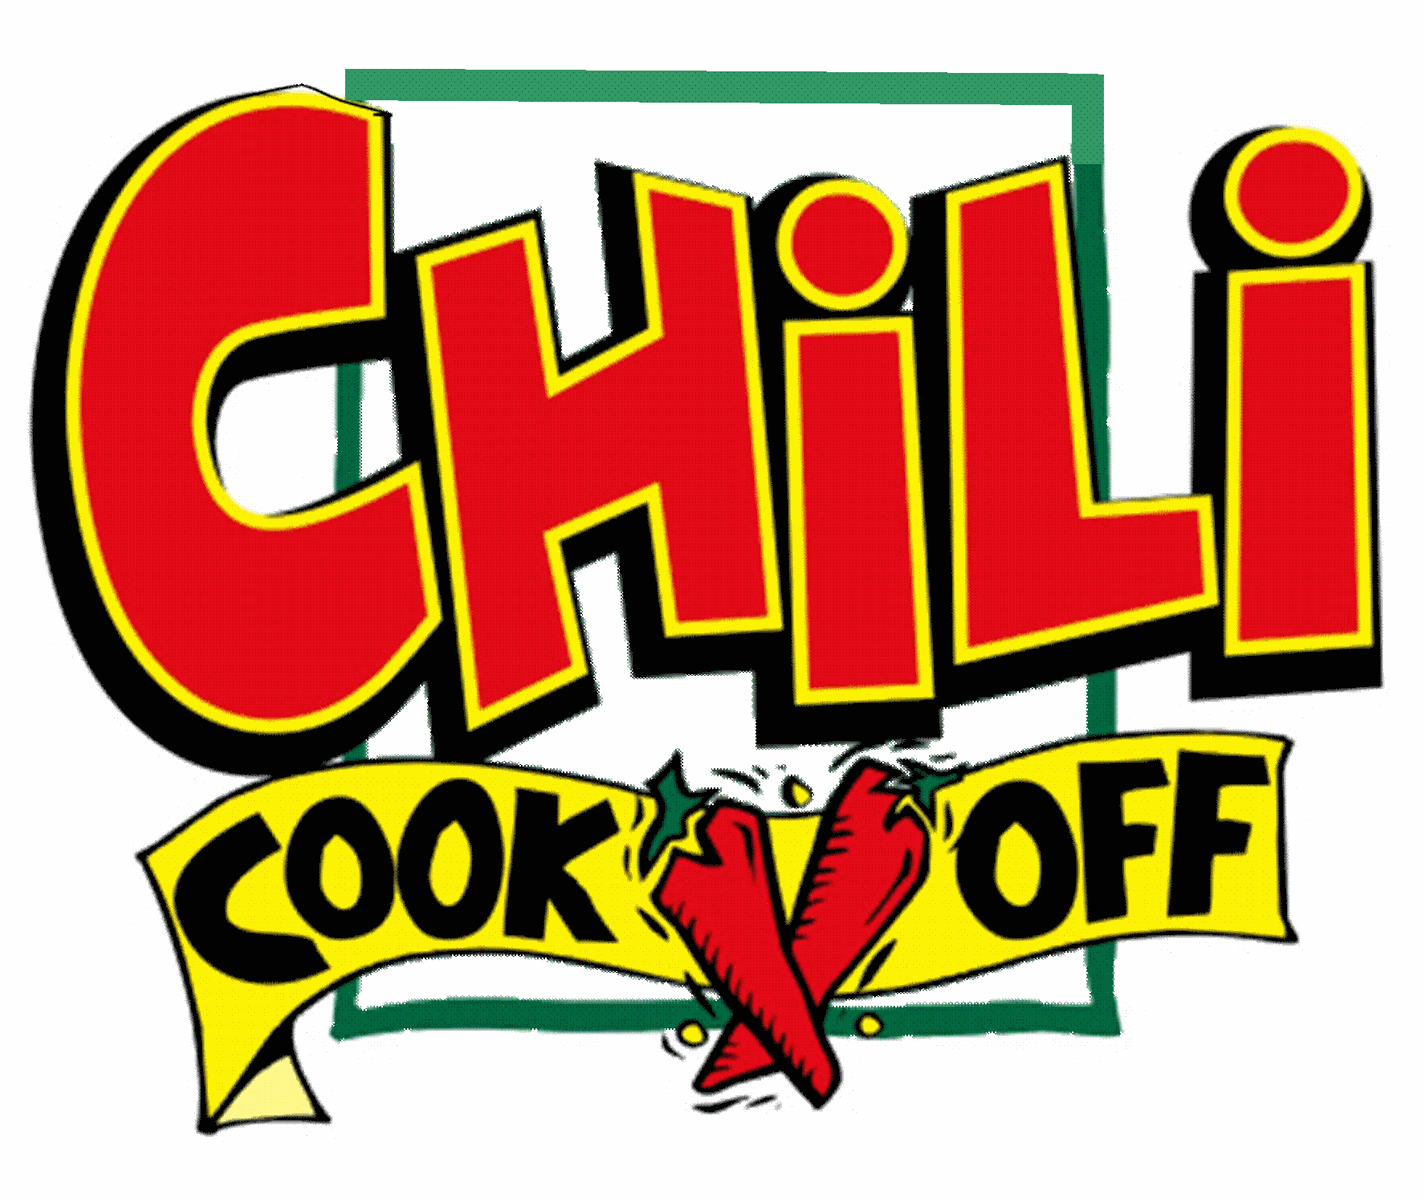 chili clipart chili contest